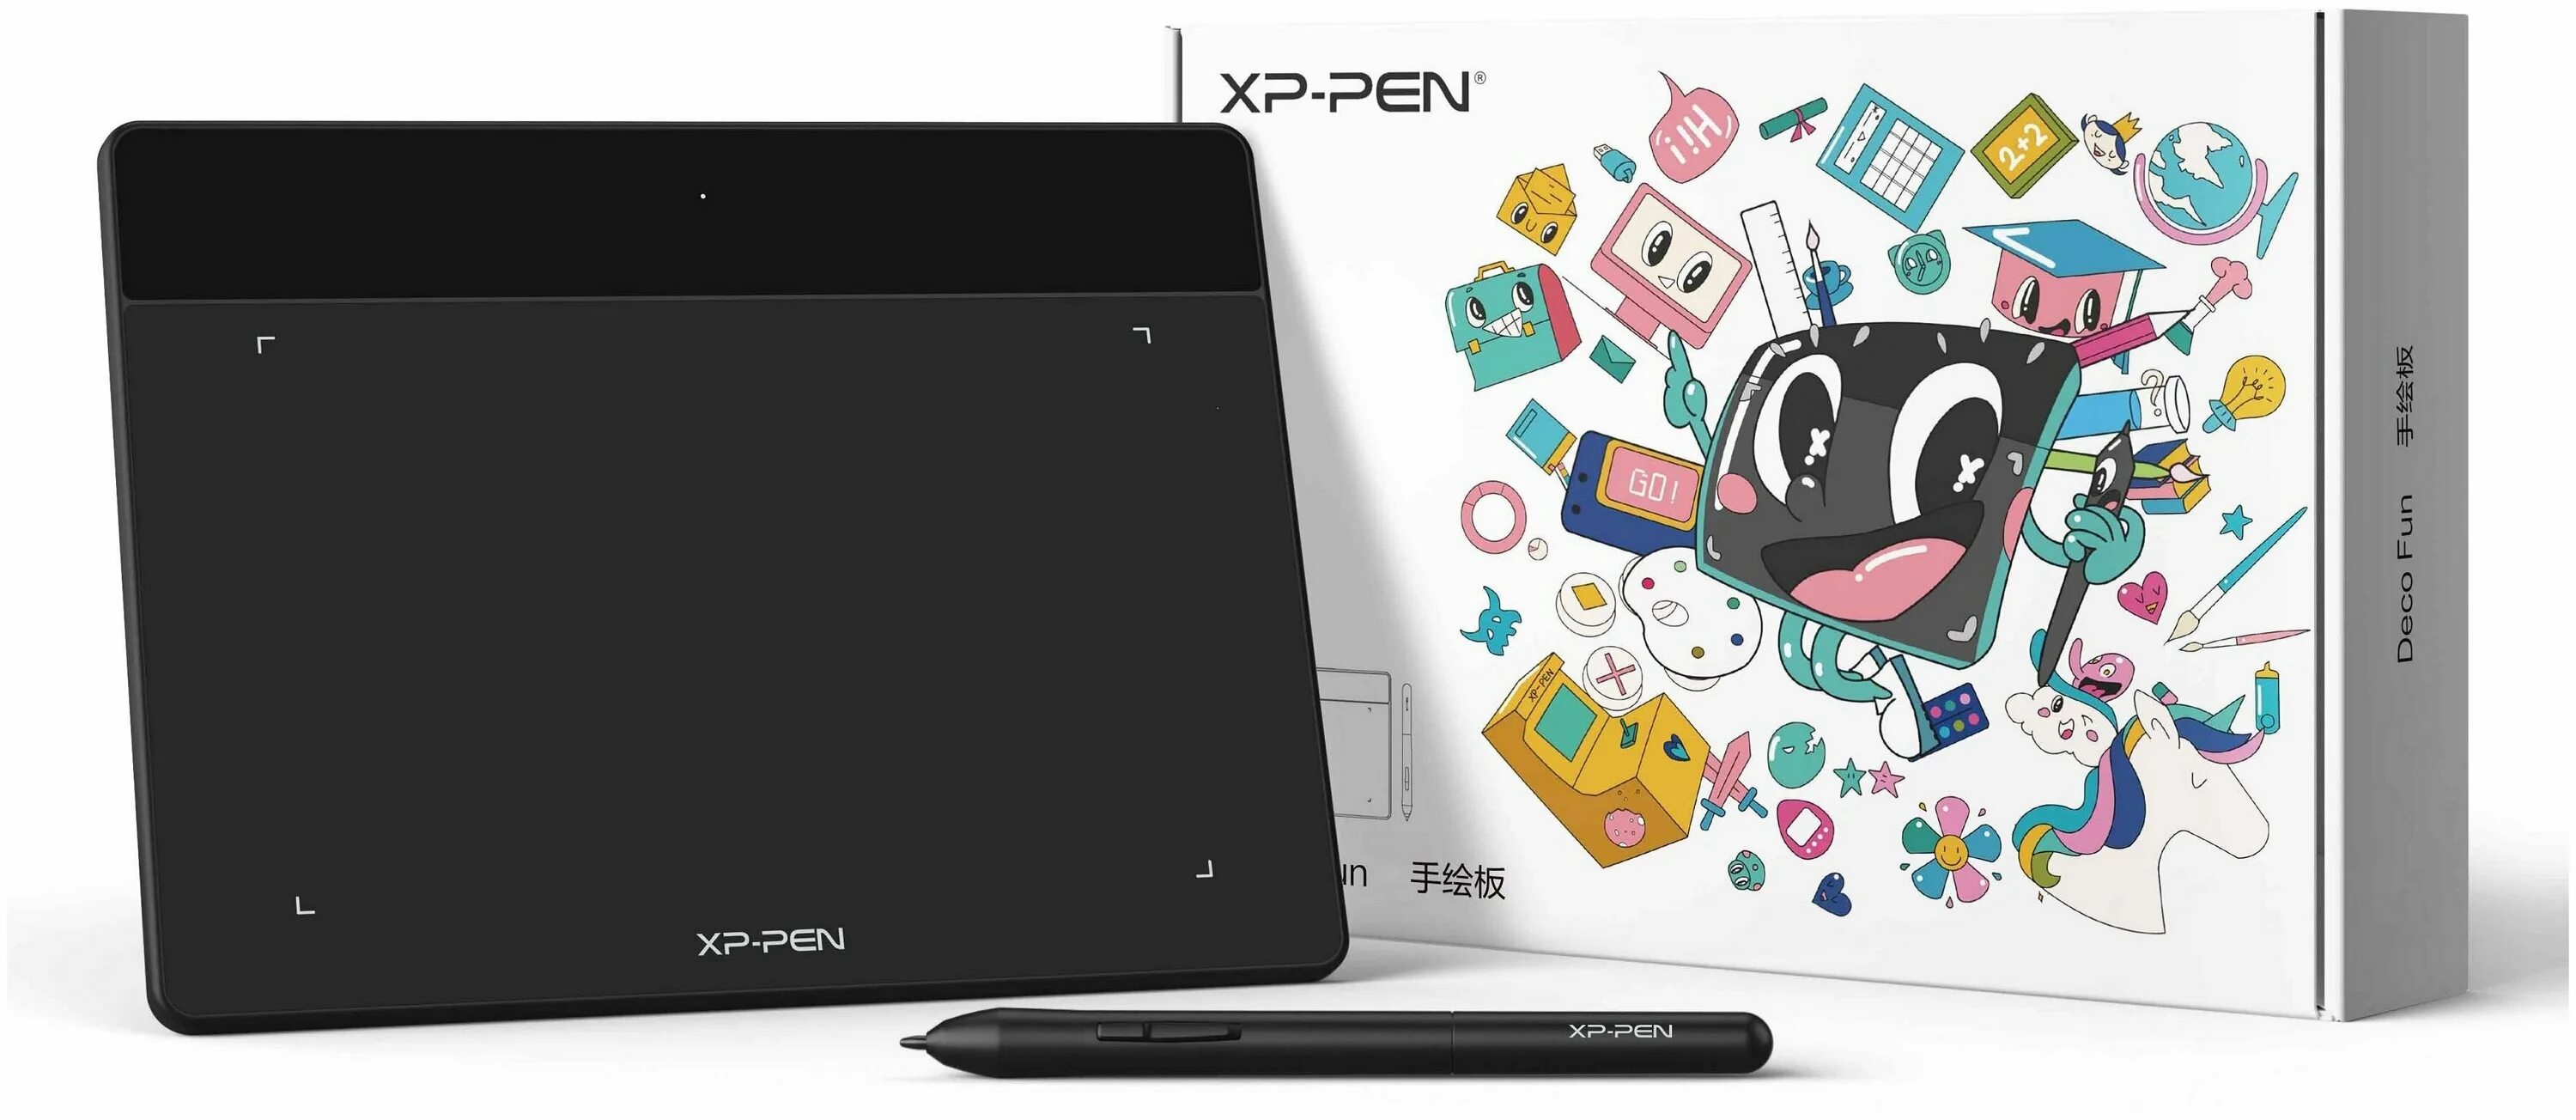 Fun l. XP Pen deco fun l. Deco fun XS Pen Tablet. Графический планшет XPPEN deco fun s. Графический планшет XP-Pen deco Mini 7 черный.